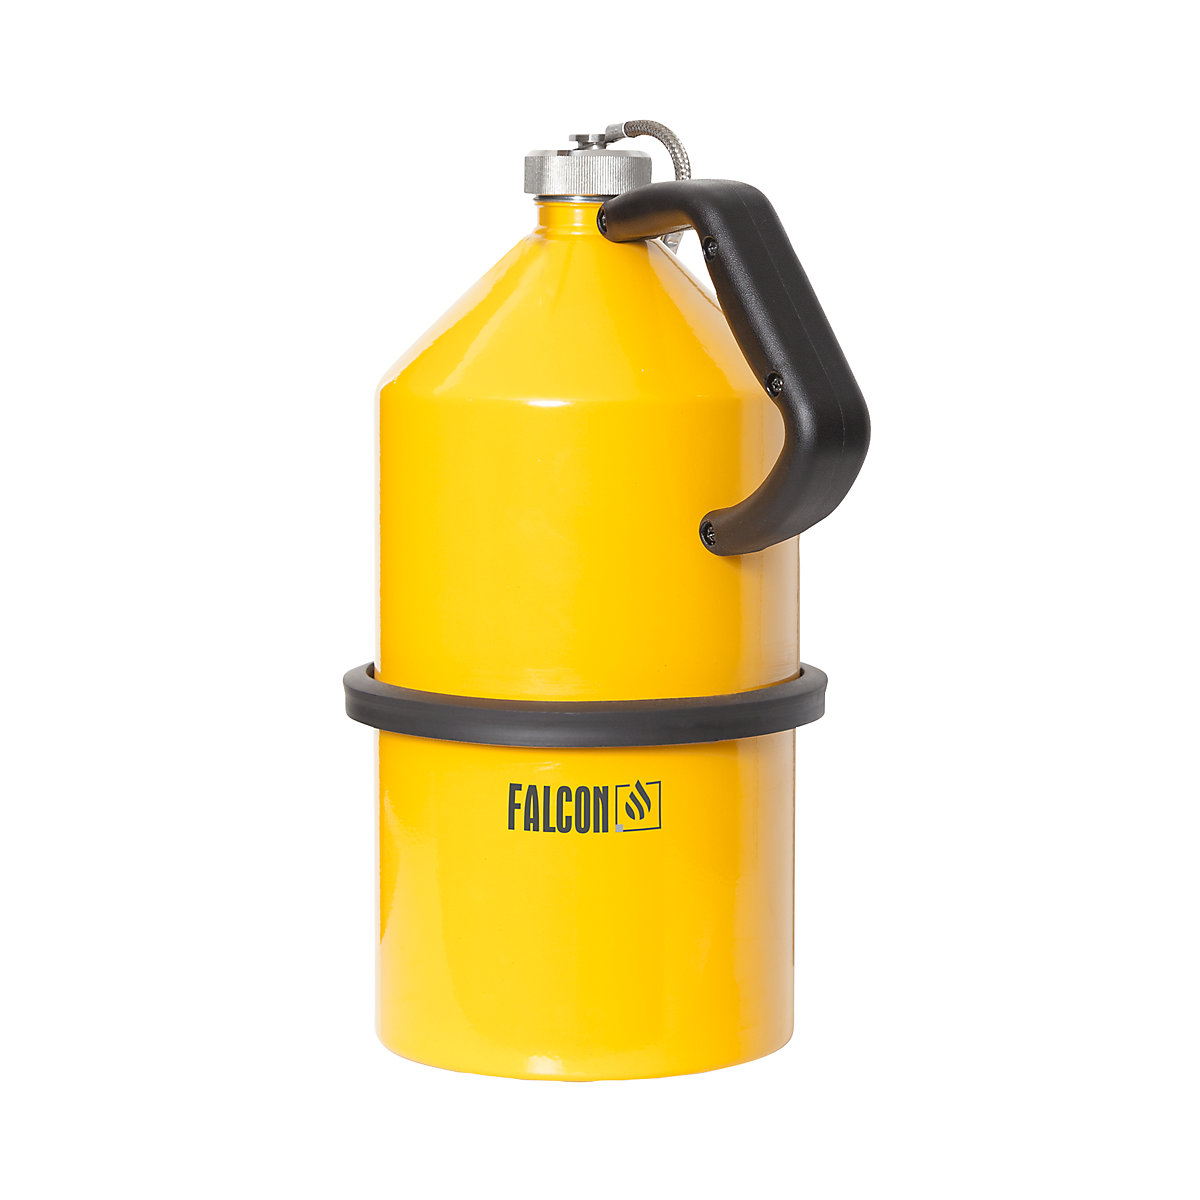 Recipiente de segurança para transporte/armazenagem com tampa de rosca – FALCON, chapa de aço, amarelo, volume 5 l-5